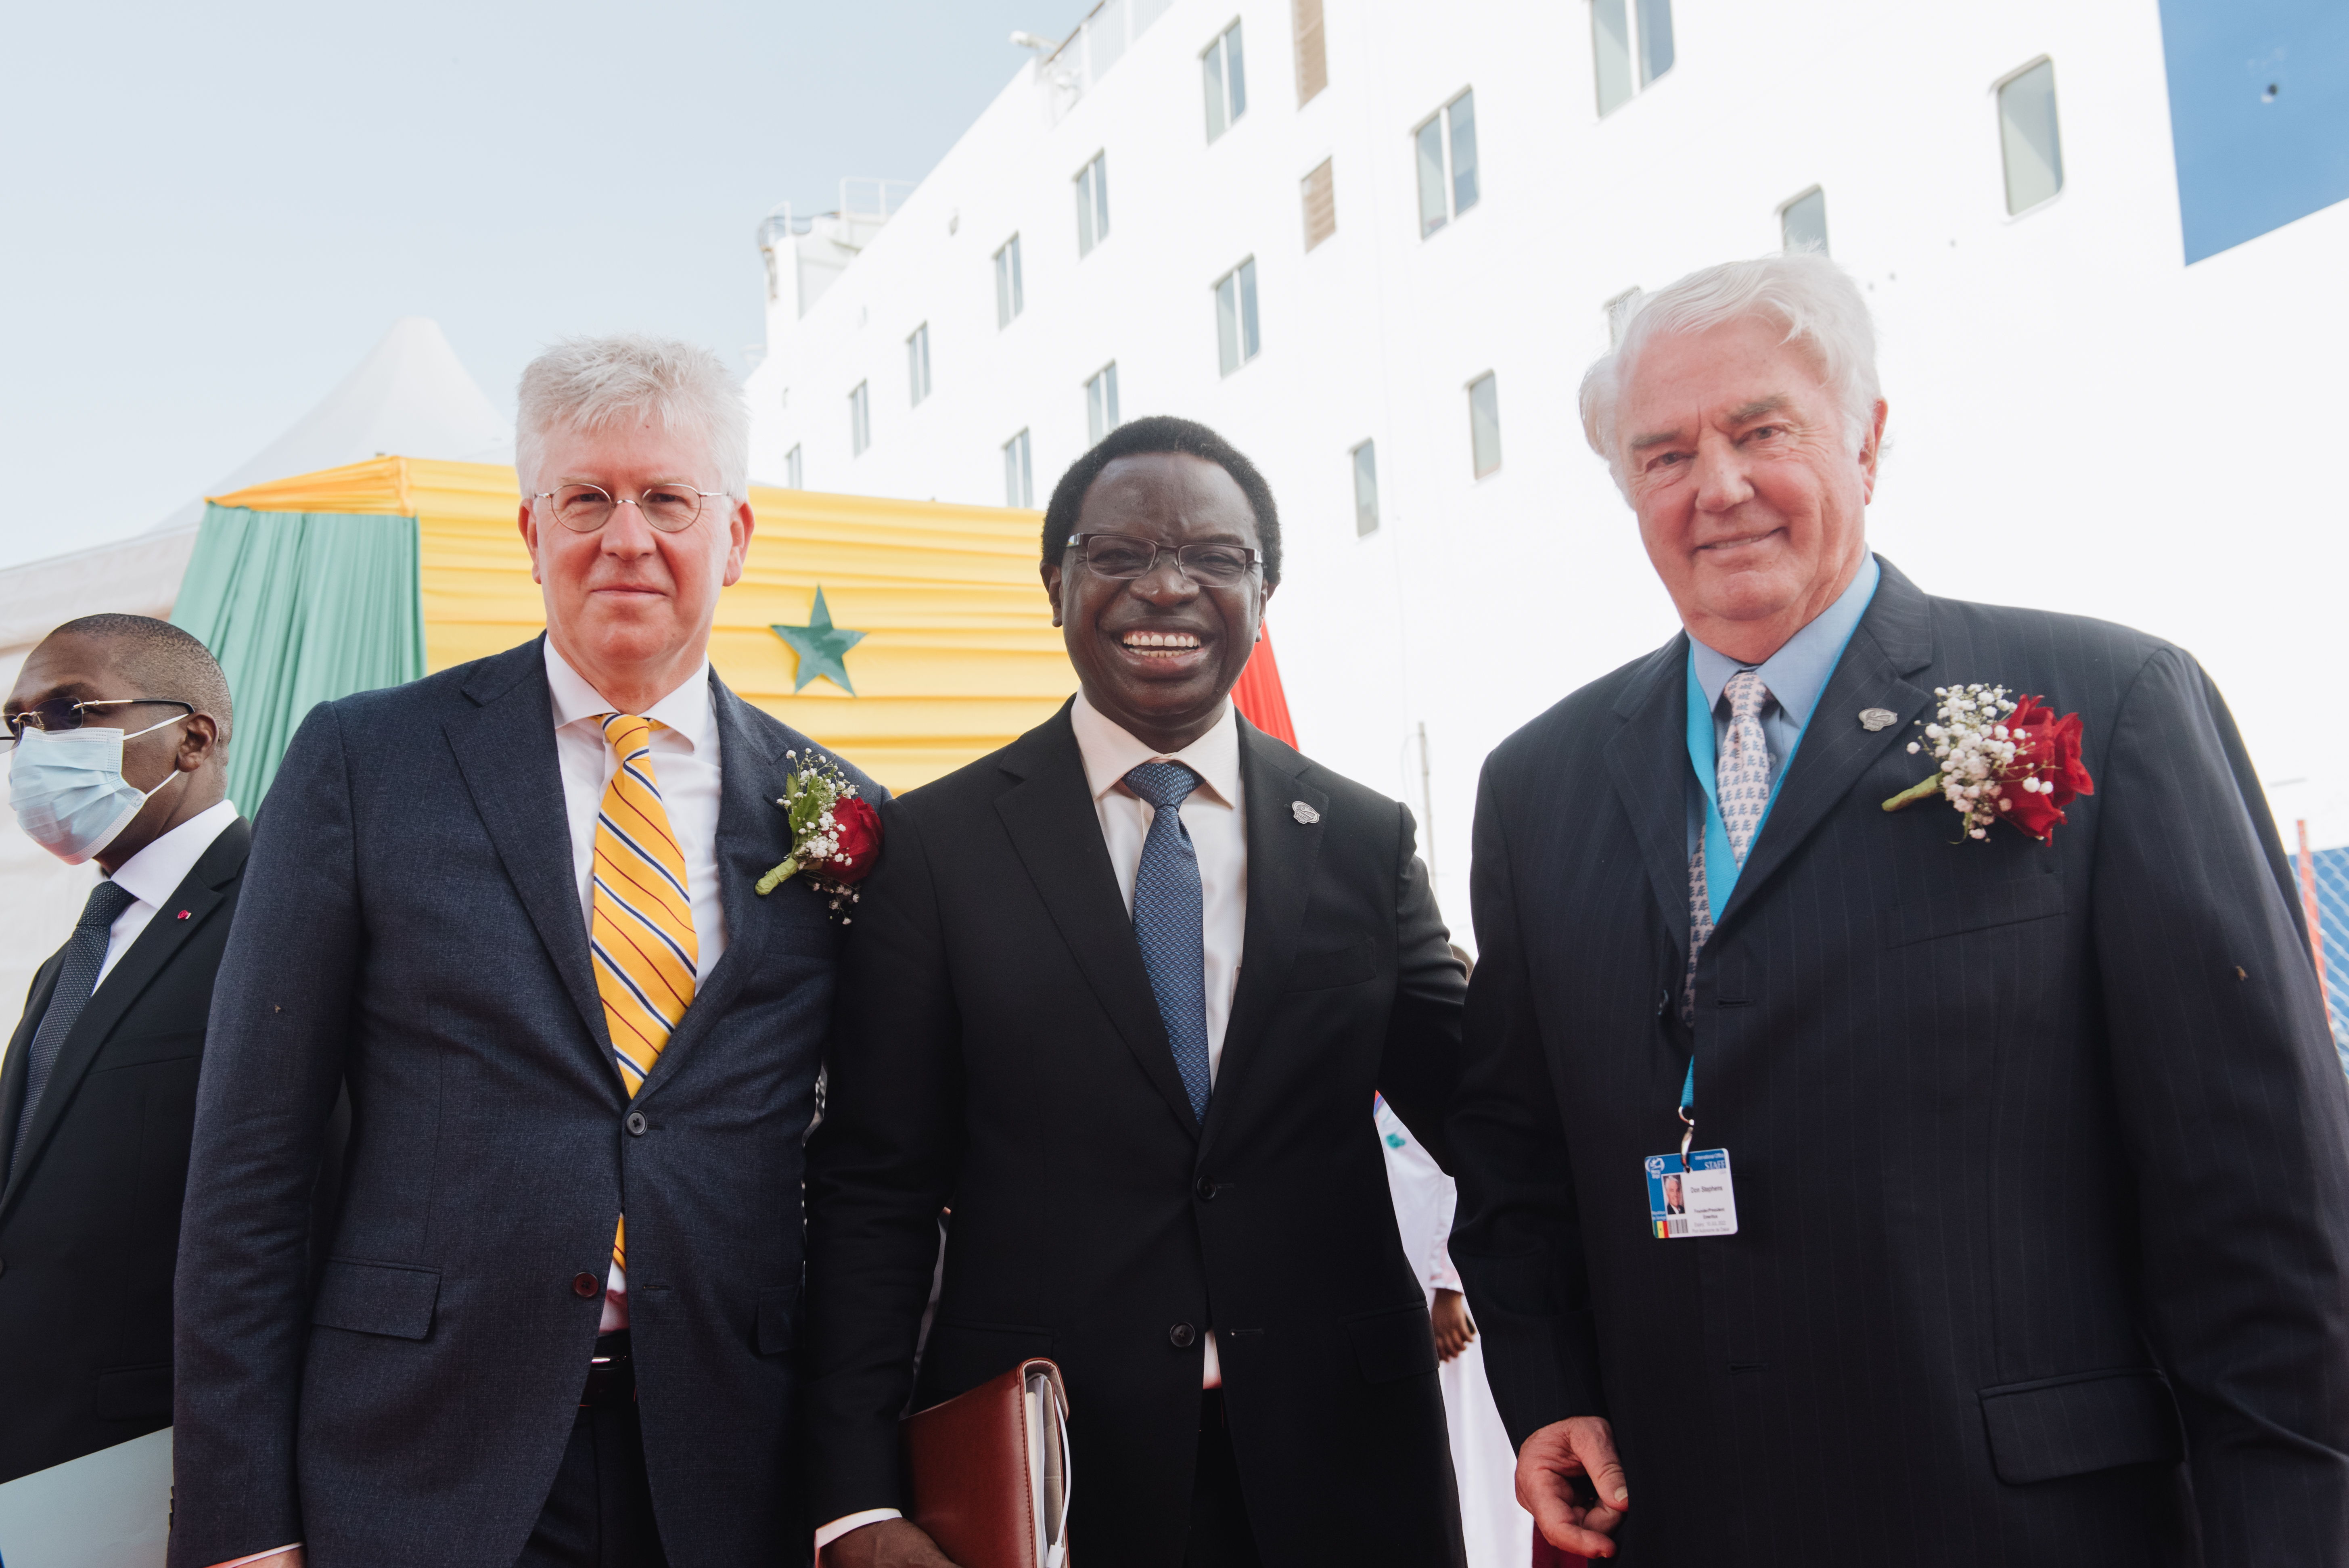 Gert van de Weerdhof, Mercy Ships verkställande direktör tillsammans med Dr. Seringe Gueye Diop, Senegals presidentens rådgivare och Don Stephens, grundare av Mercy Ships.